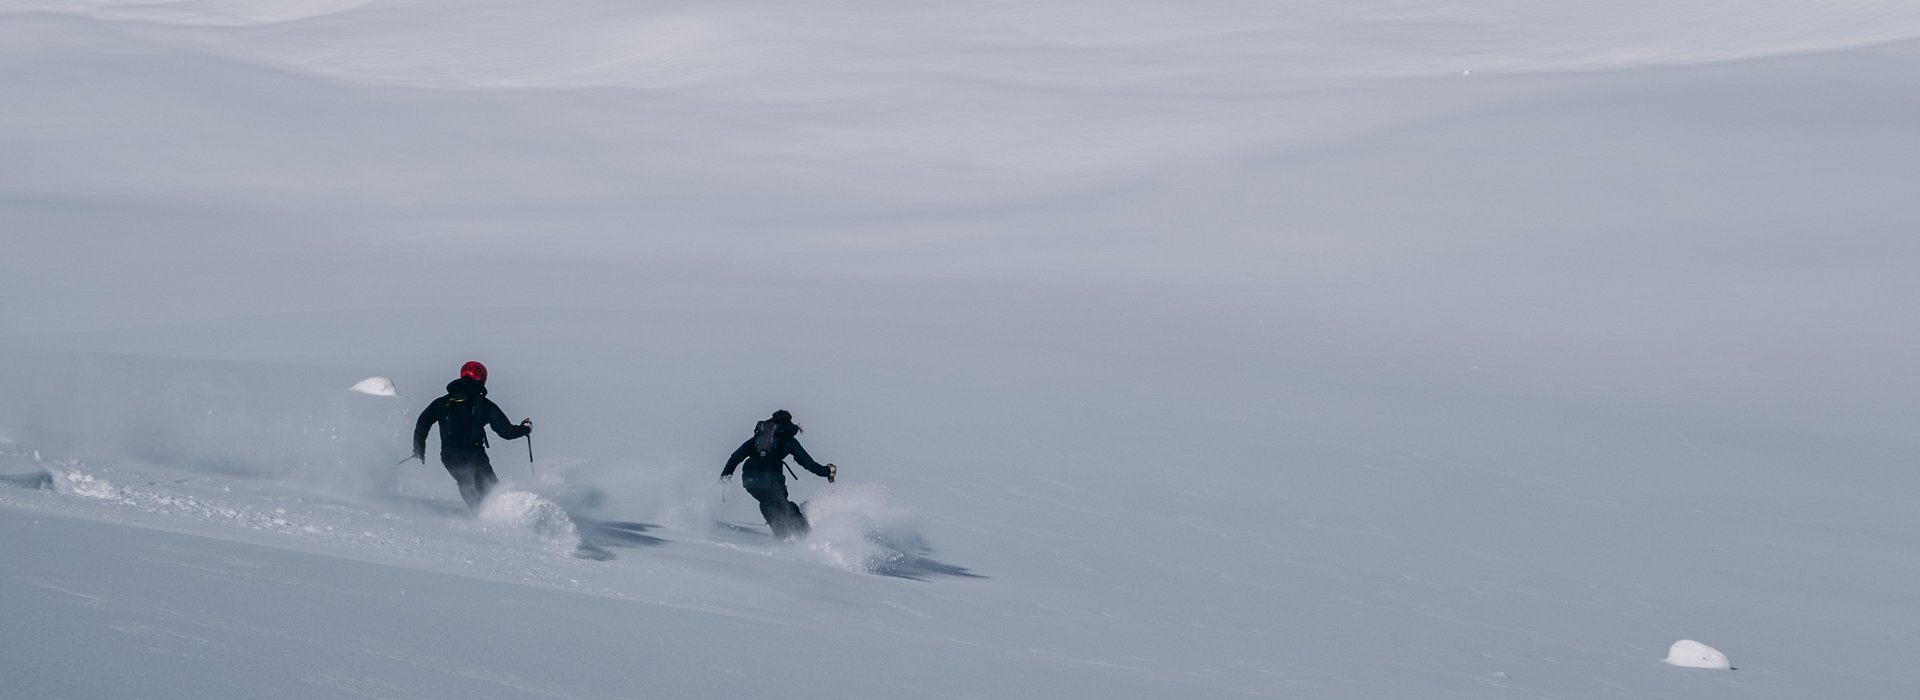 Zwei Skifahrer fahren Off-Pist über die weiße Schneelandschaft.